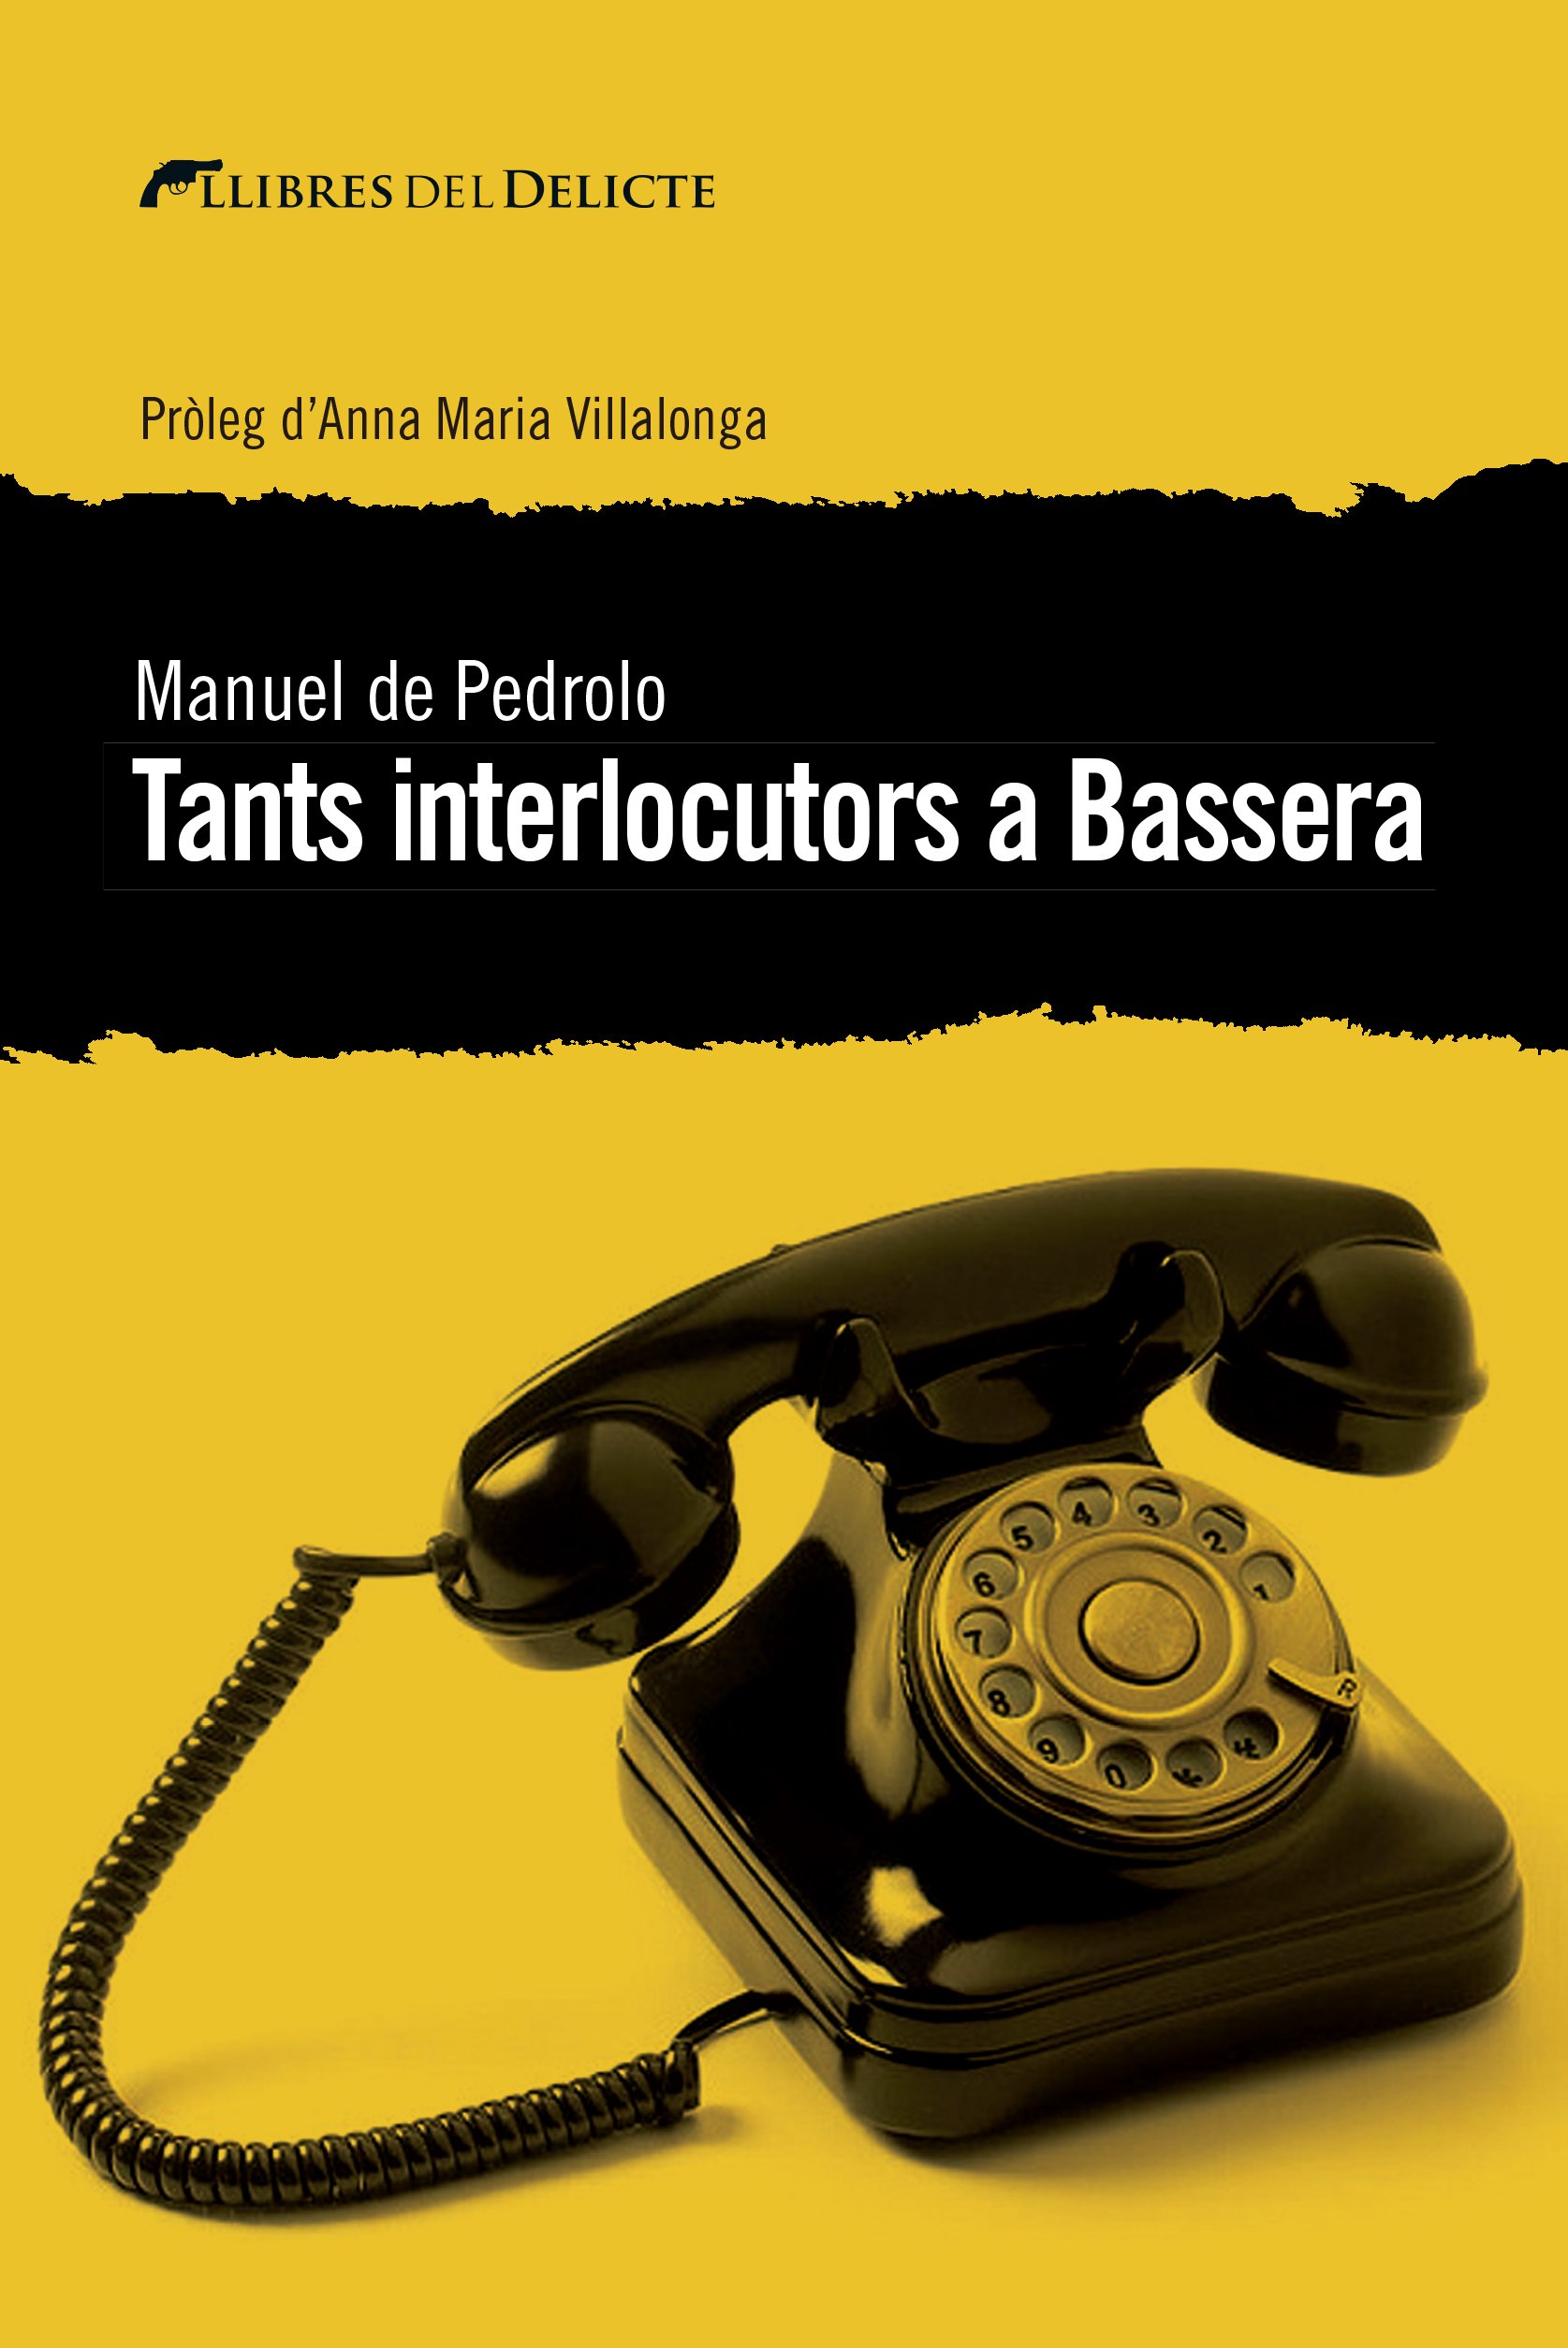 Manuel de Pedrolo, 'Tants interlocutors a Bassera'. Llibres del Delicte, 290 pp., 17,50€.